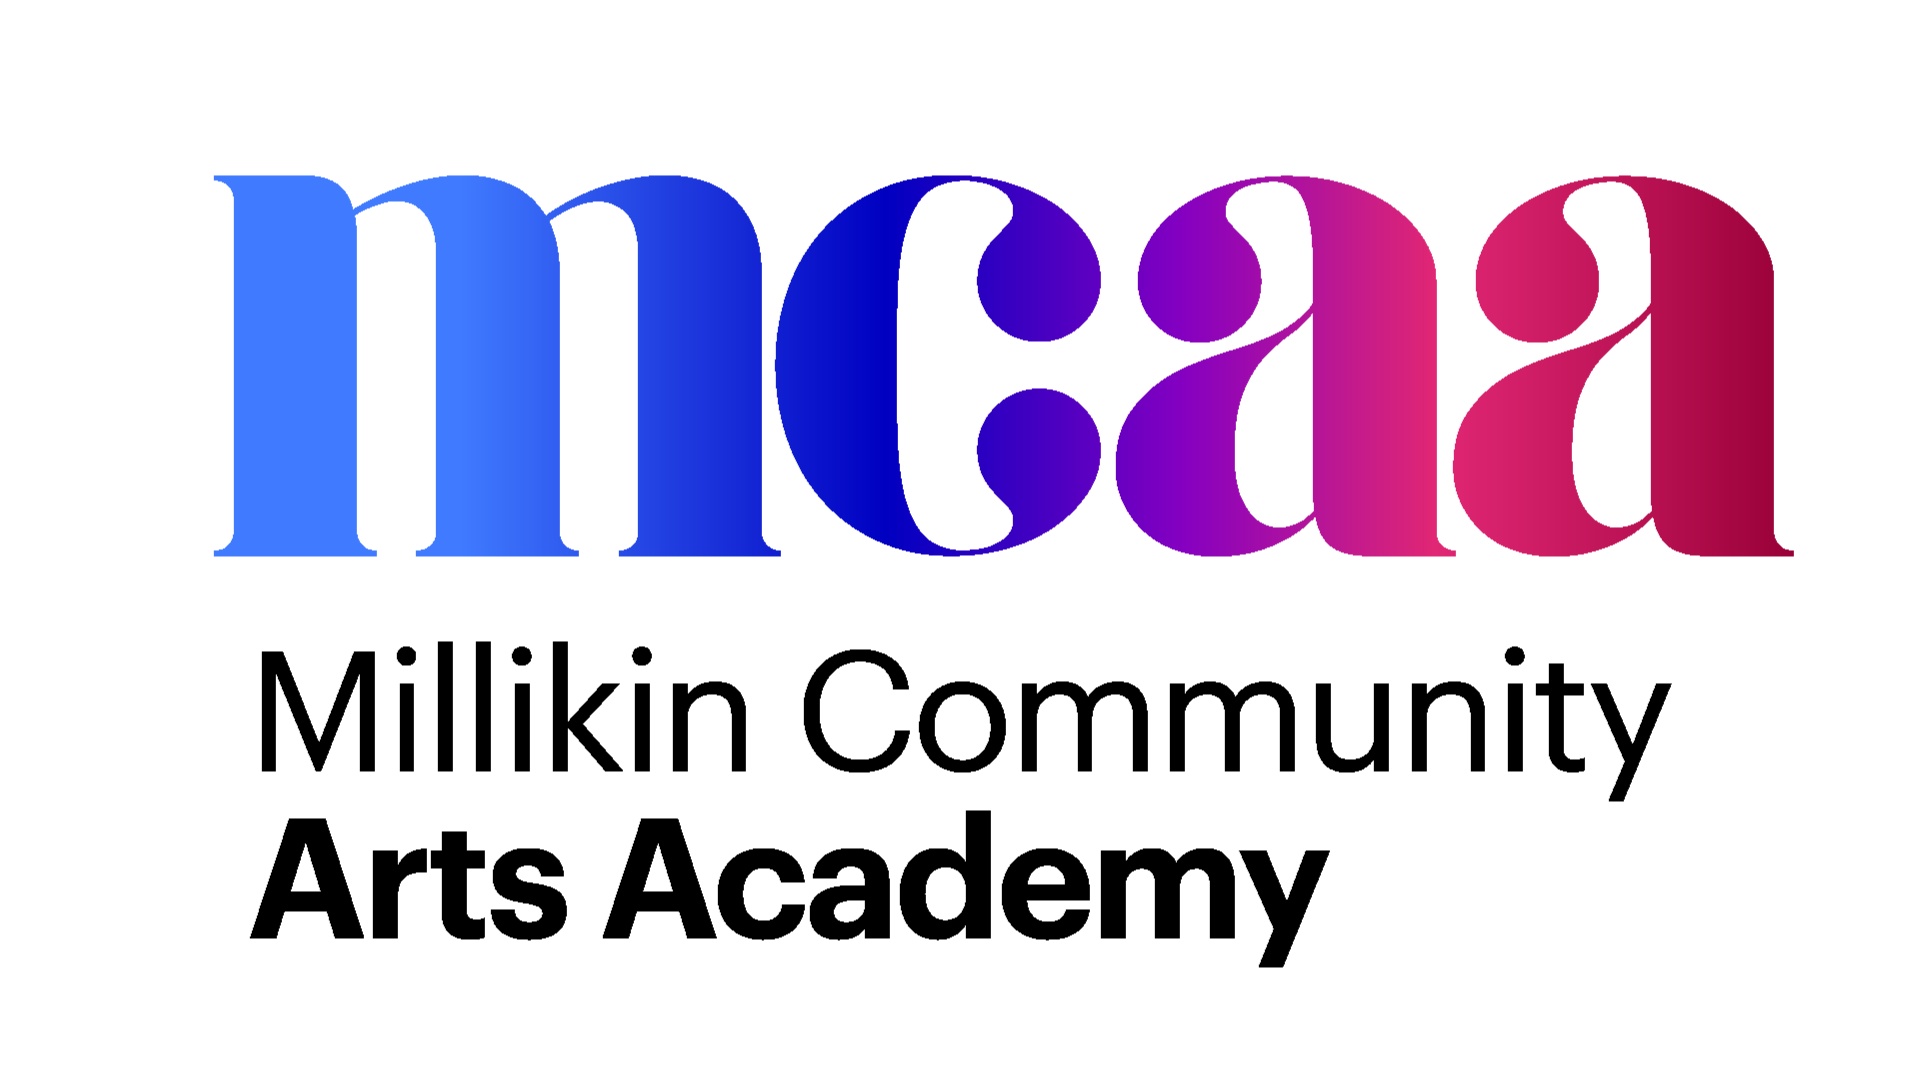 MCAA Logo